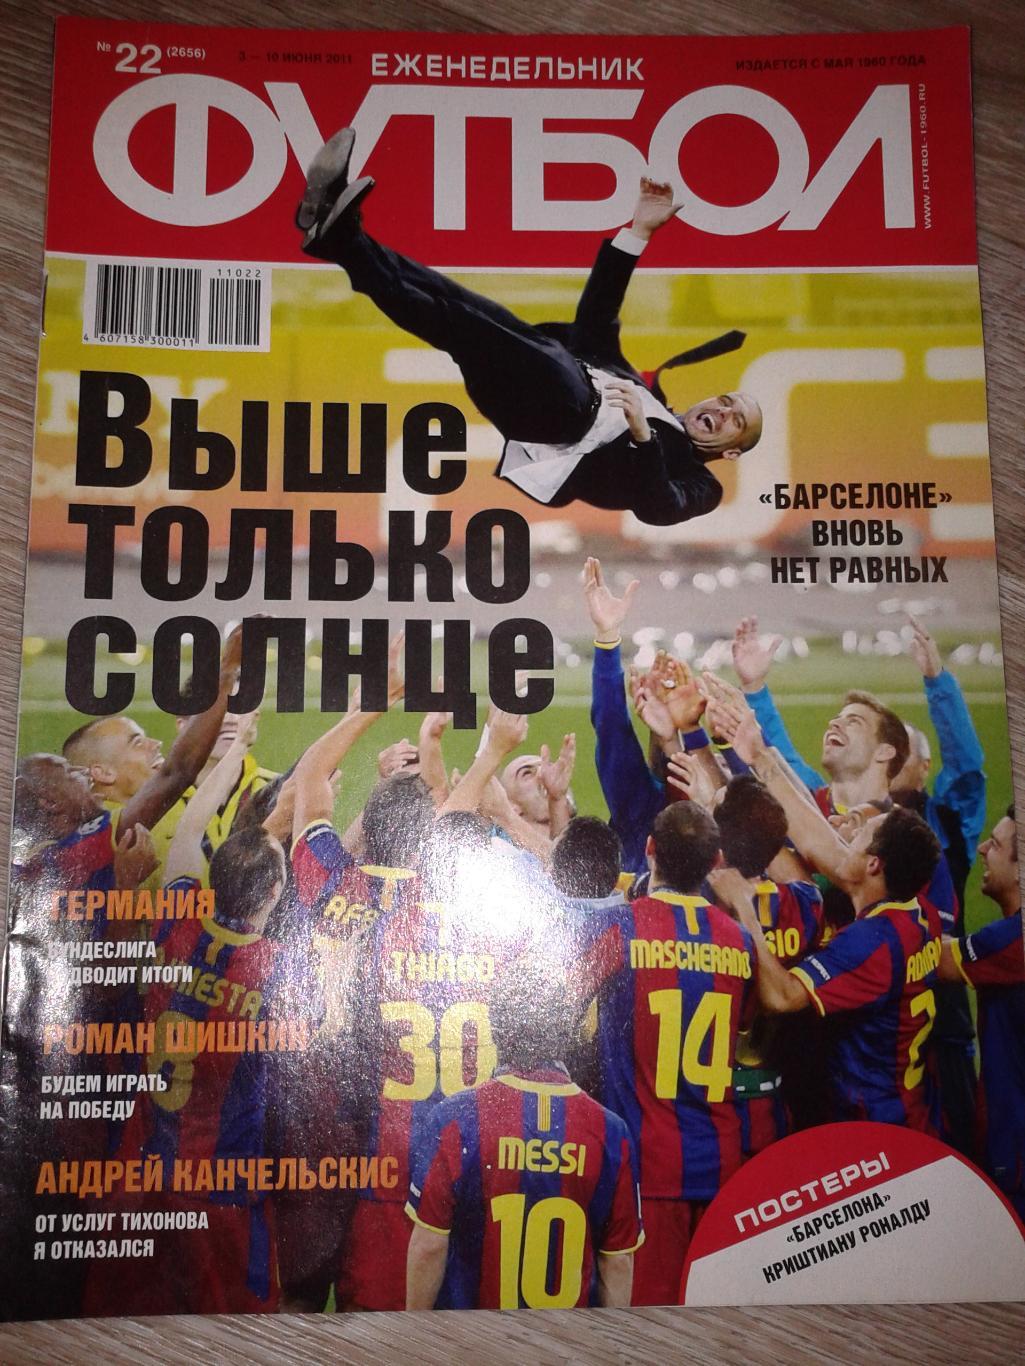 2011 Еженедельник Футбол №22